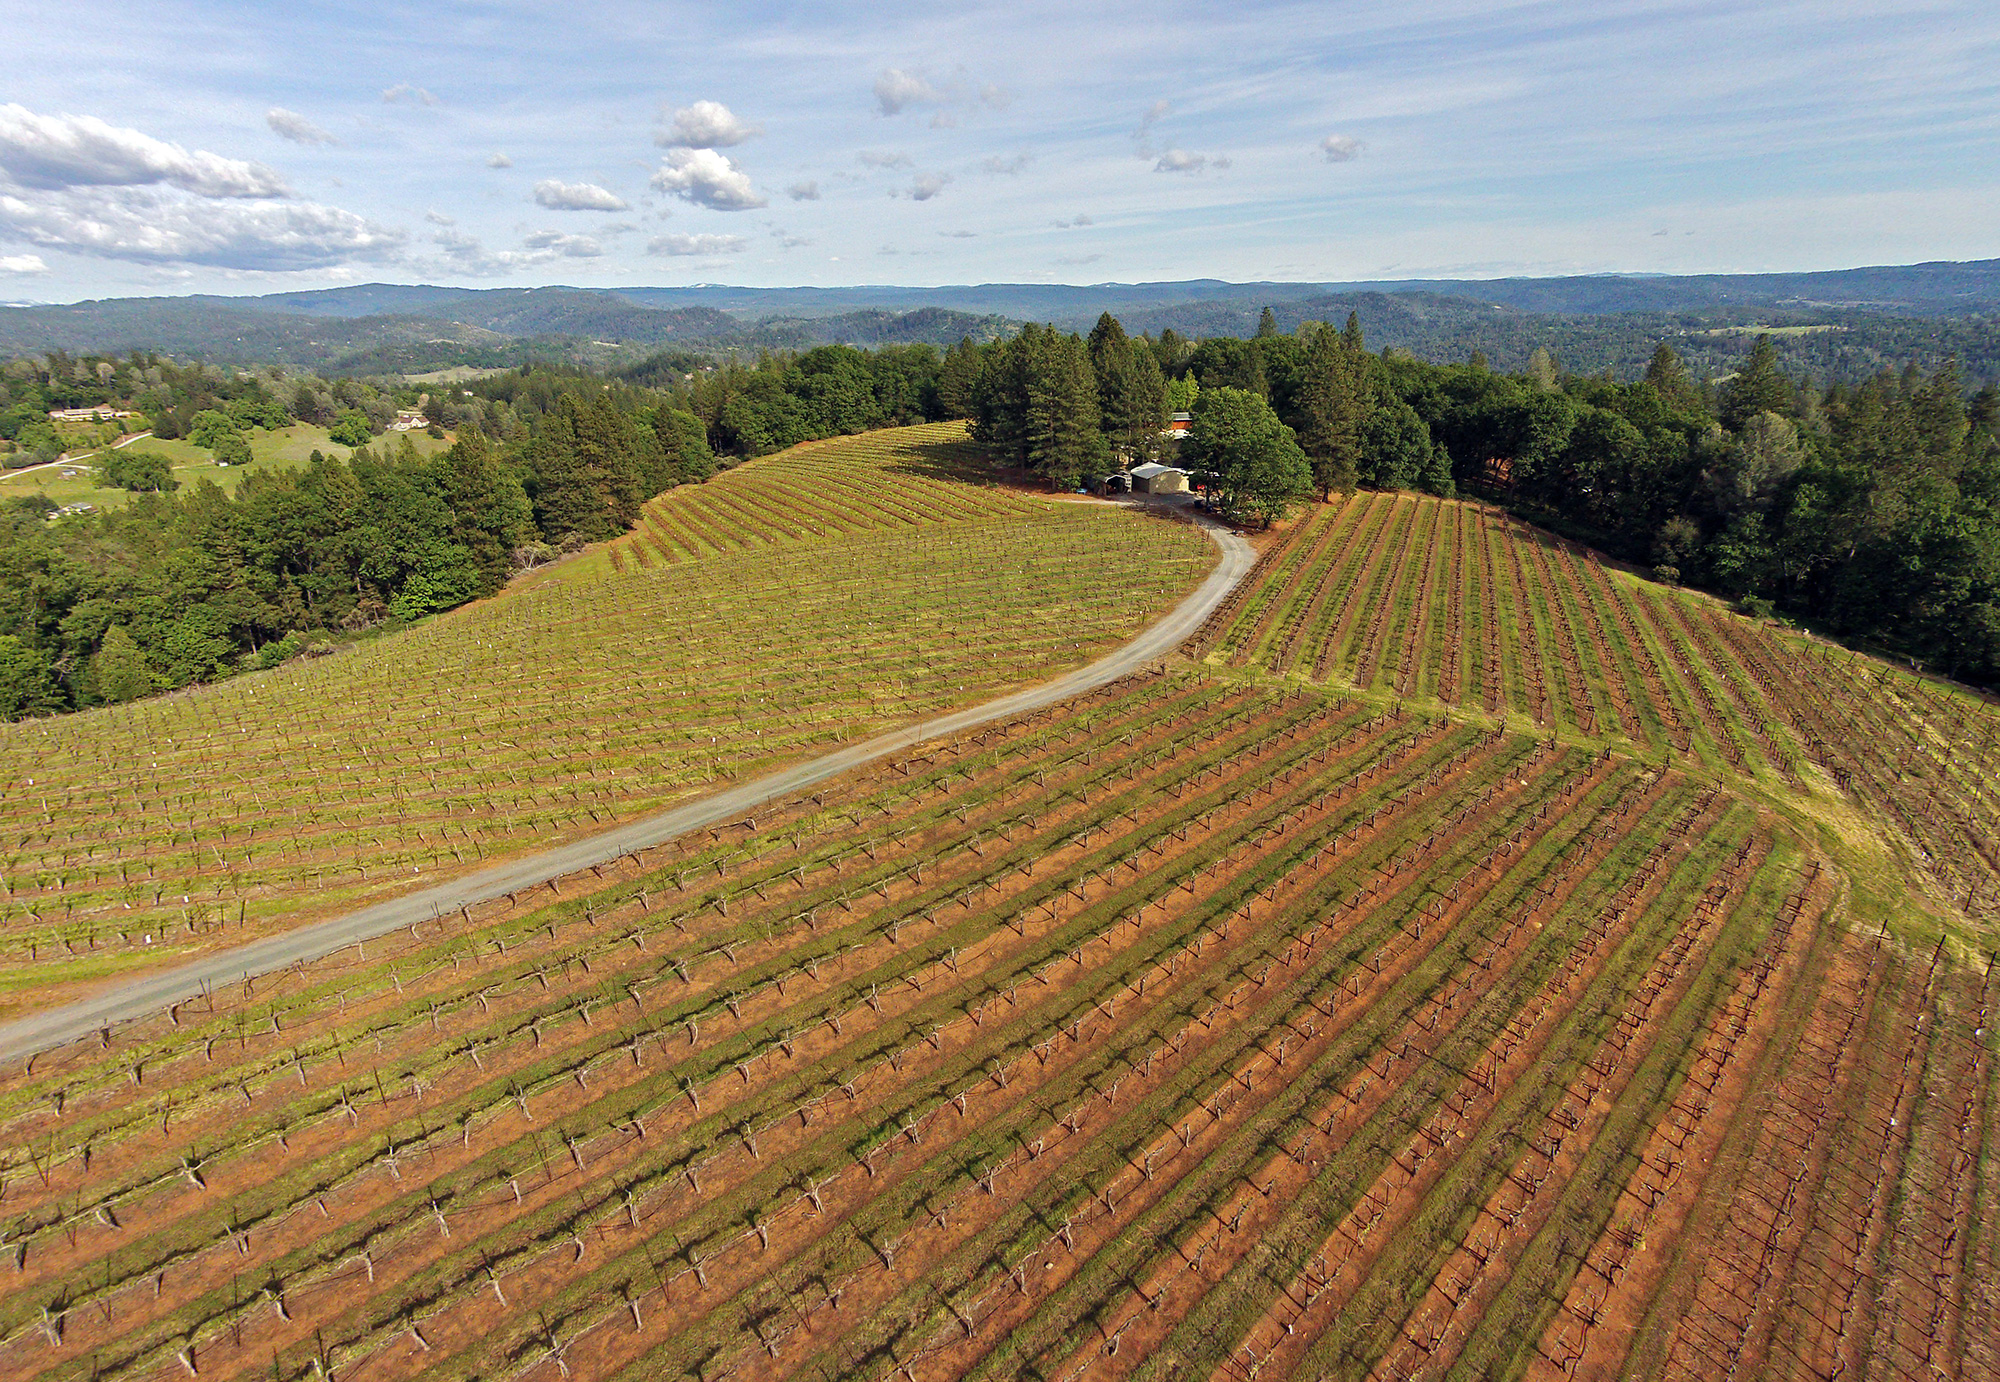 Premium Sierra Foothills Estate Vineyard and Winery